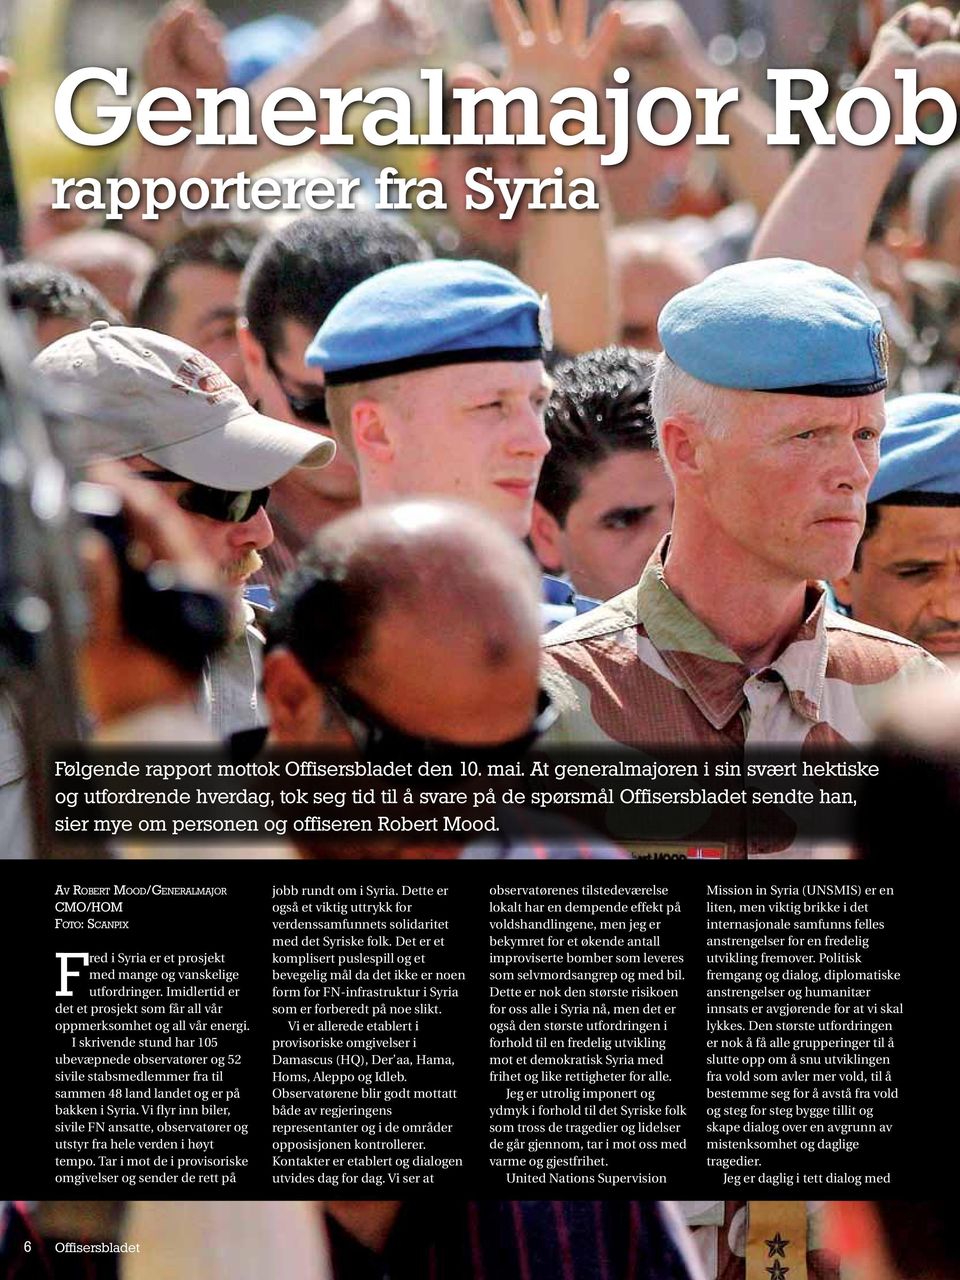 Av Robert Mood/Generalmajor CMO/HOM Foto: Scanpix Fred i Syria er et prosjekt med mange og vanskelige utfordringer. Imidlertid er det et prosjekt som får all vår oppmerksomhet og all vår energi.